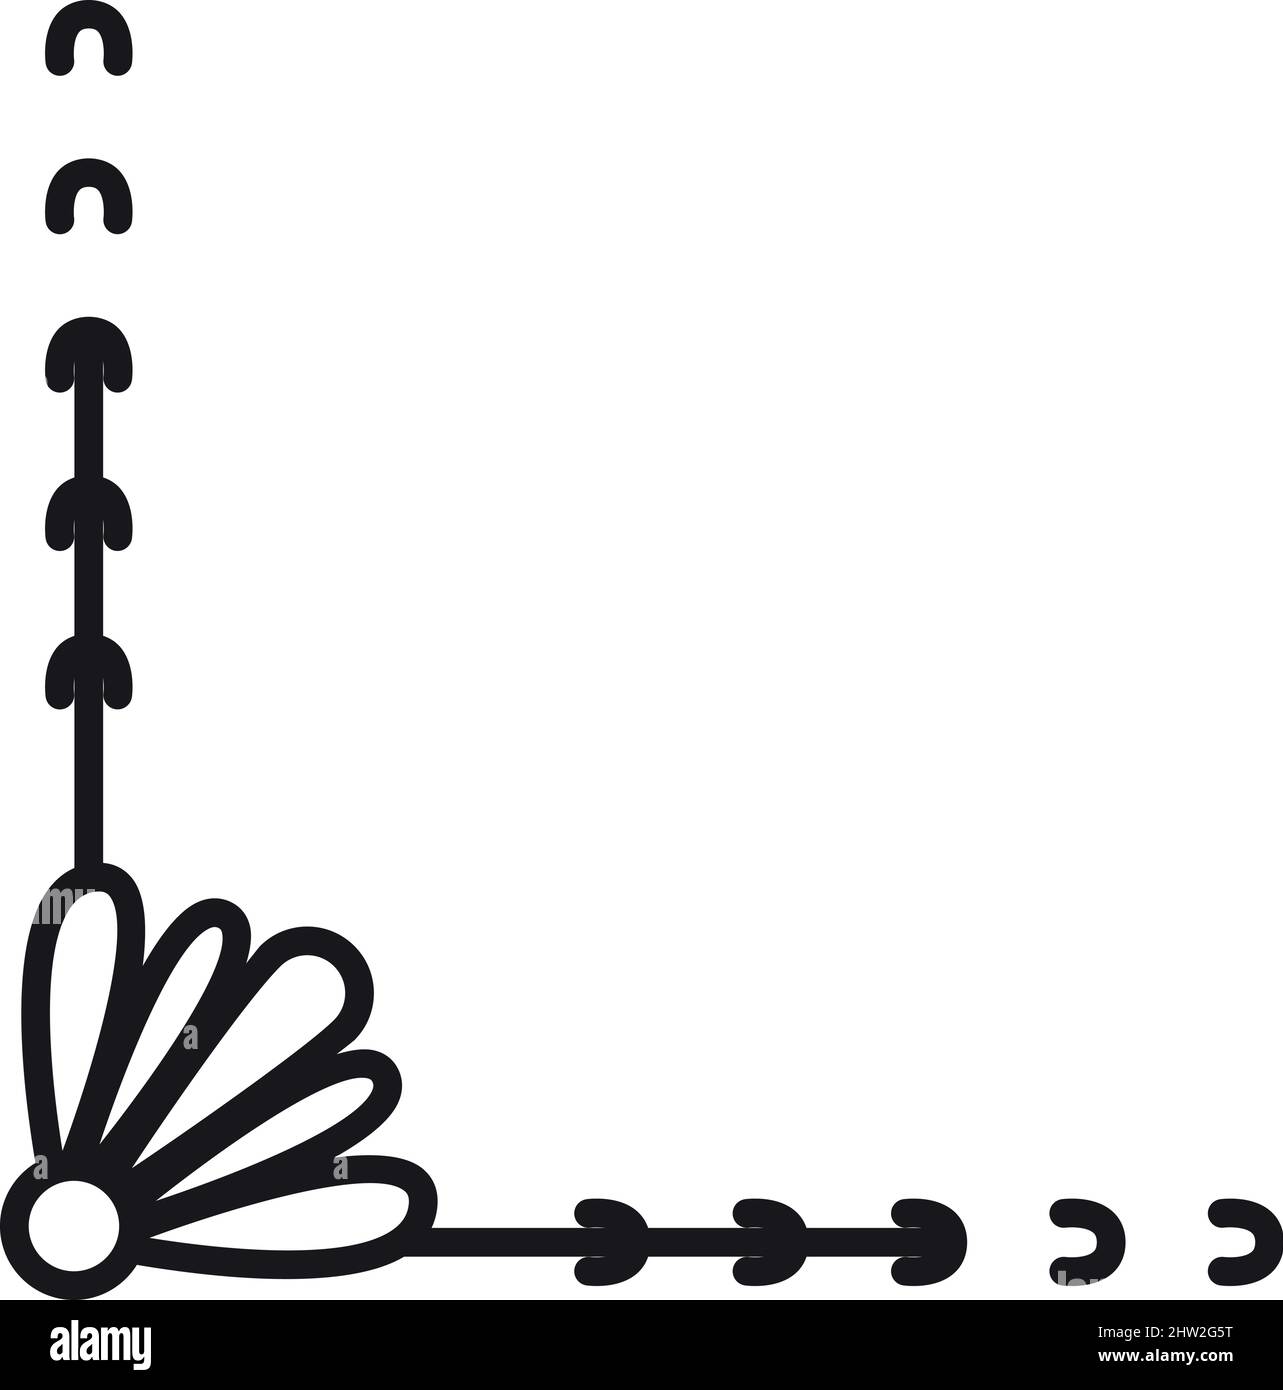 Angolo floreale decorativo. Bordo del doodle disegnato a mano Illustrazione Vettoriale